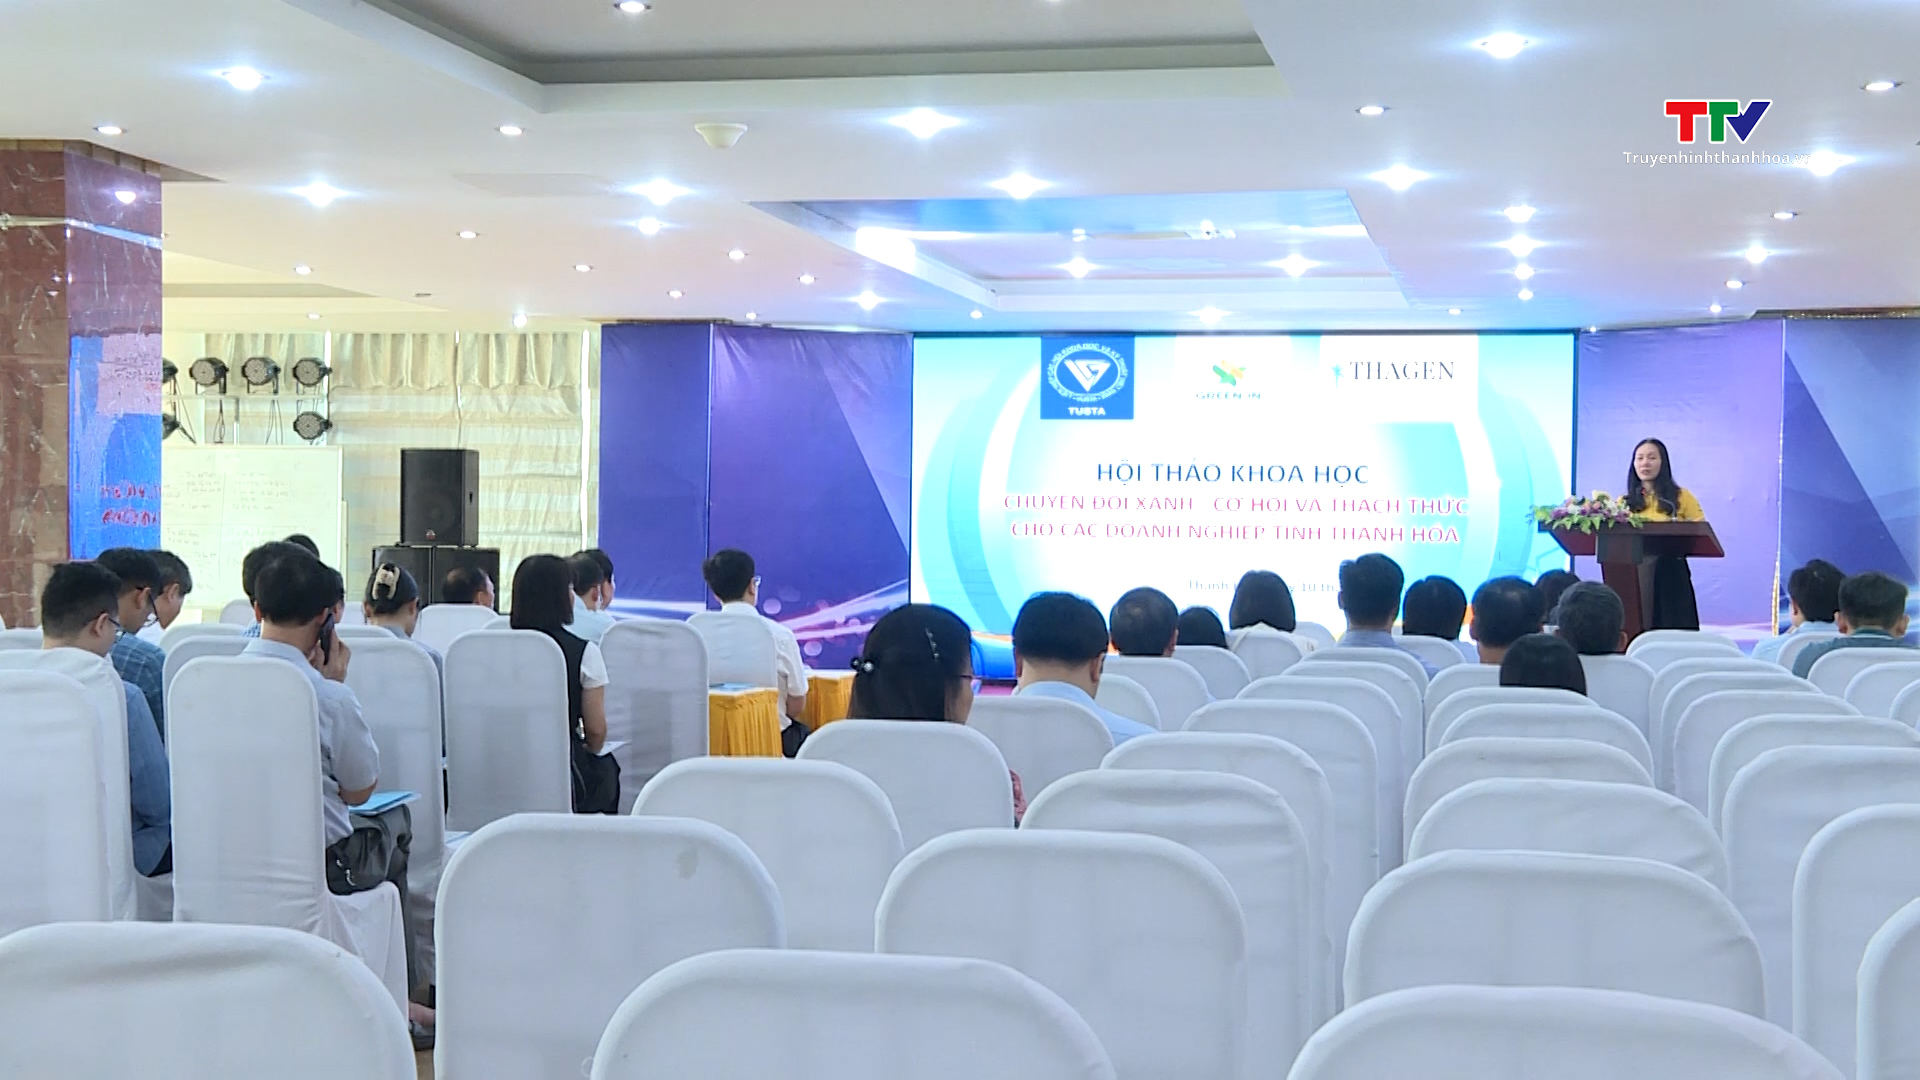 Hội thảo “Chuyển đổi xanh - Cơ hội và thách thức cho các doanh nghiệp tỉnh Thanh Hoá”- Ảnh 1.